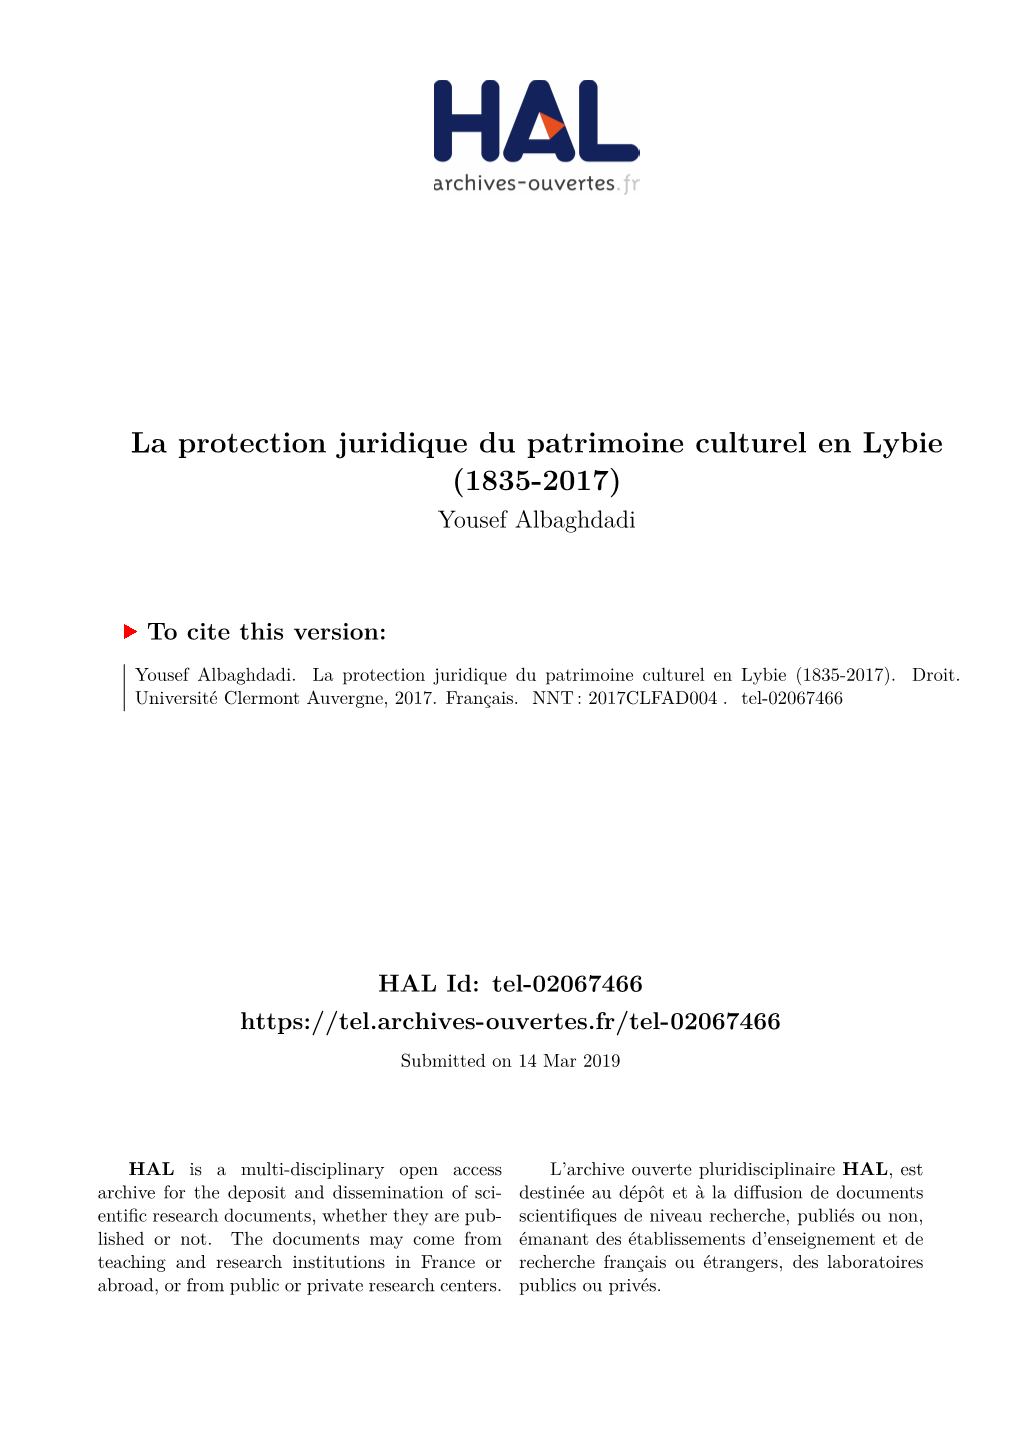 La Protection Juridique Du Patrimoine Culturel En Lybie (1835-2017) Yousef Albaghdadi